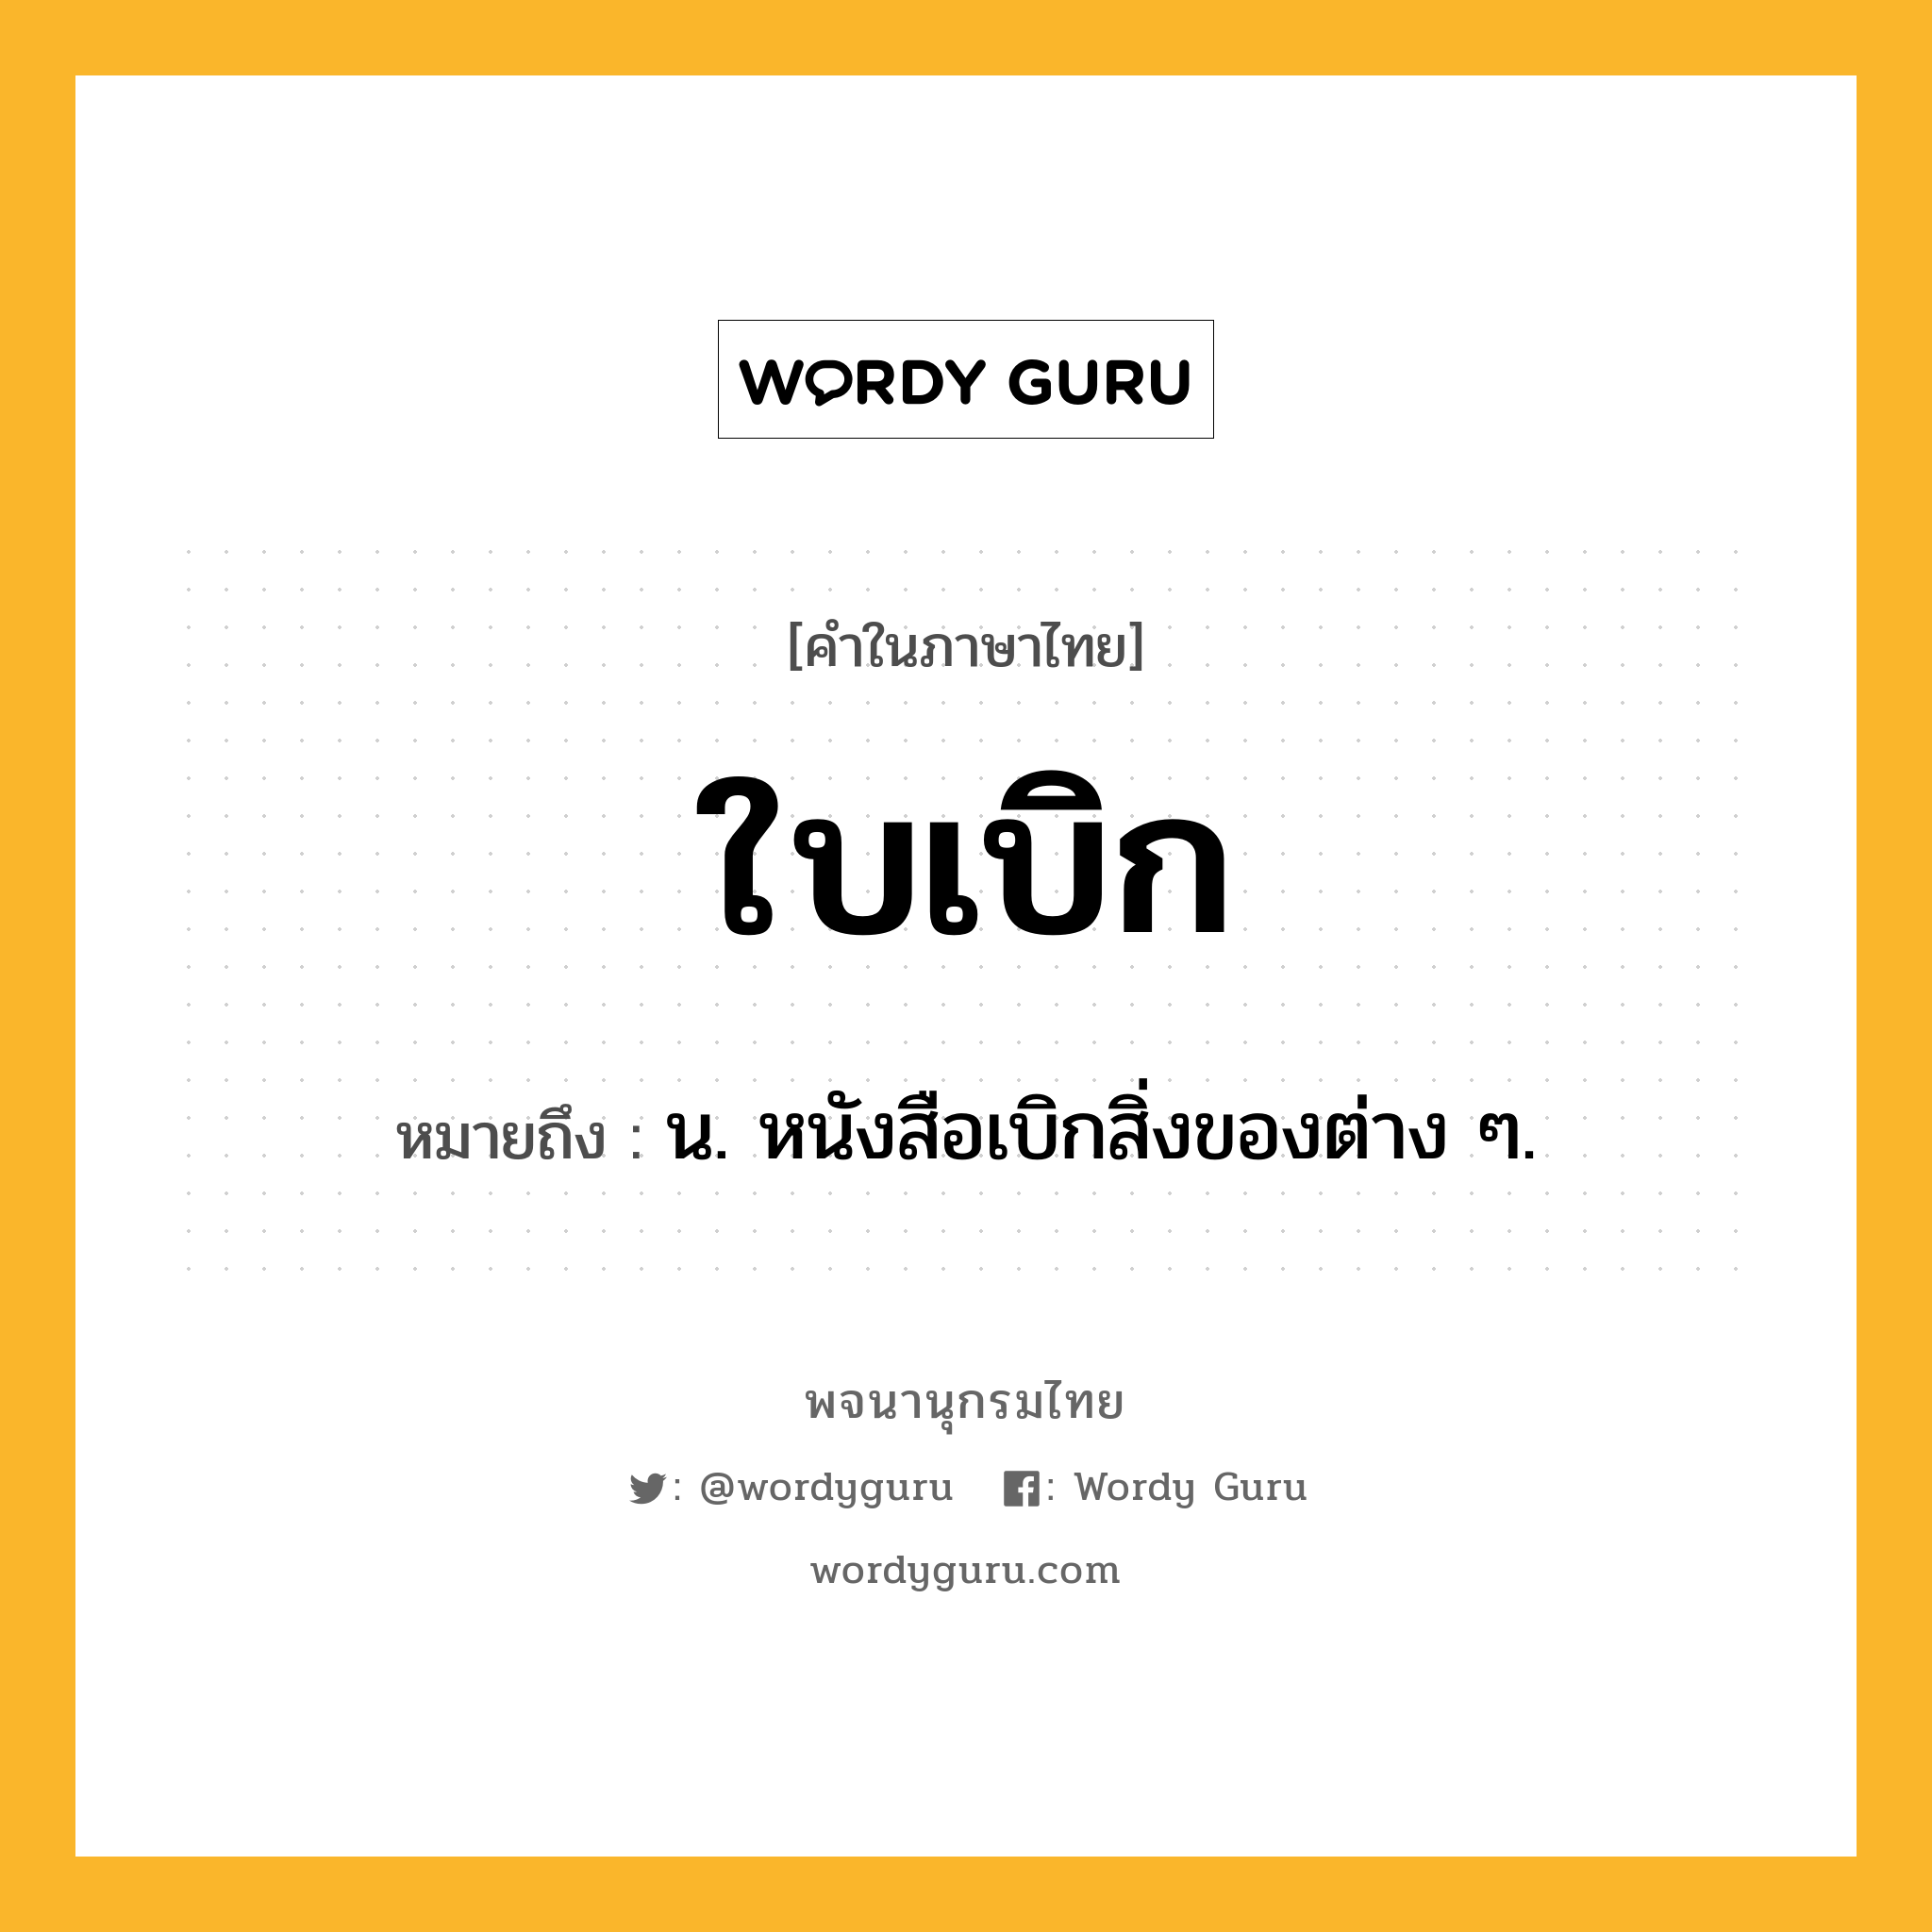 ใบเบิก หมายถึงอะไร?, คำในภาษาไทย ใบเบิก หมายถึง น. หนังสือเบิกสิ่งของต่าง ๆ.